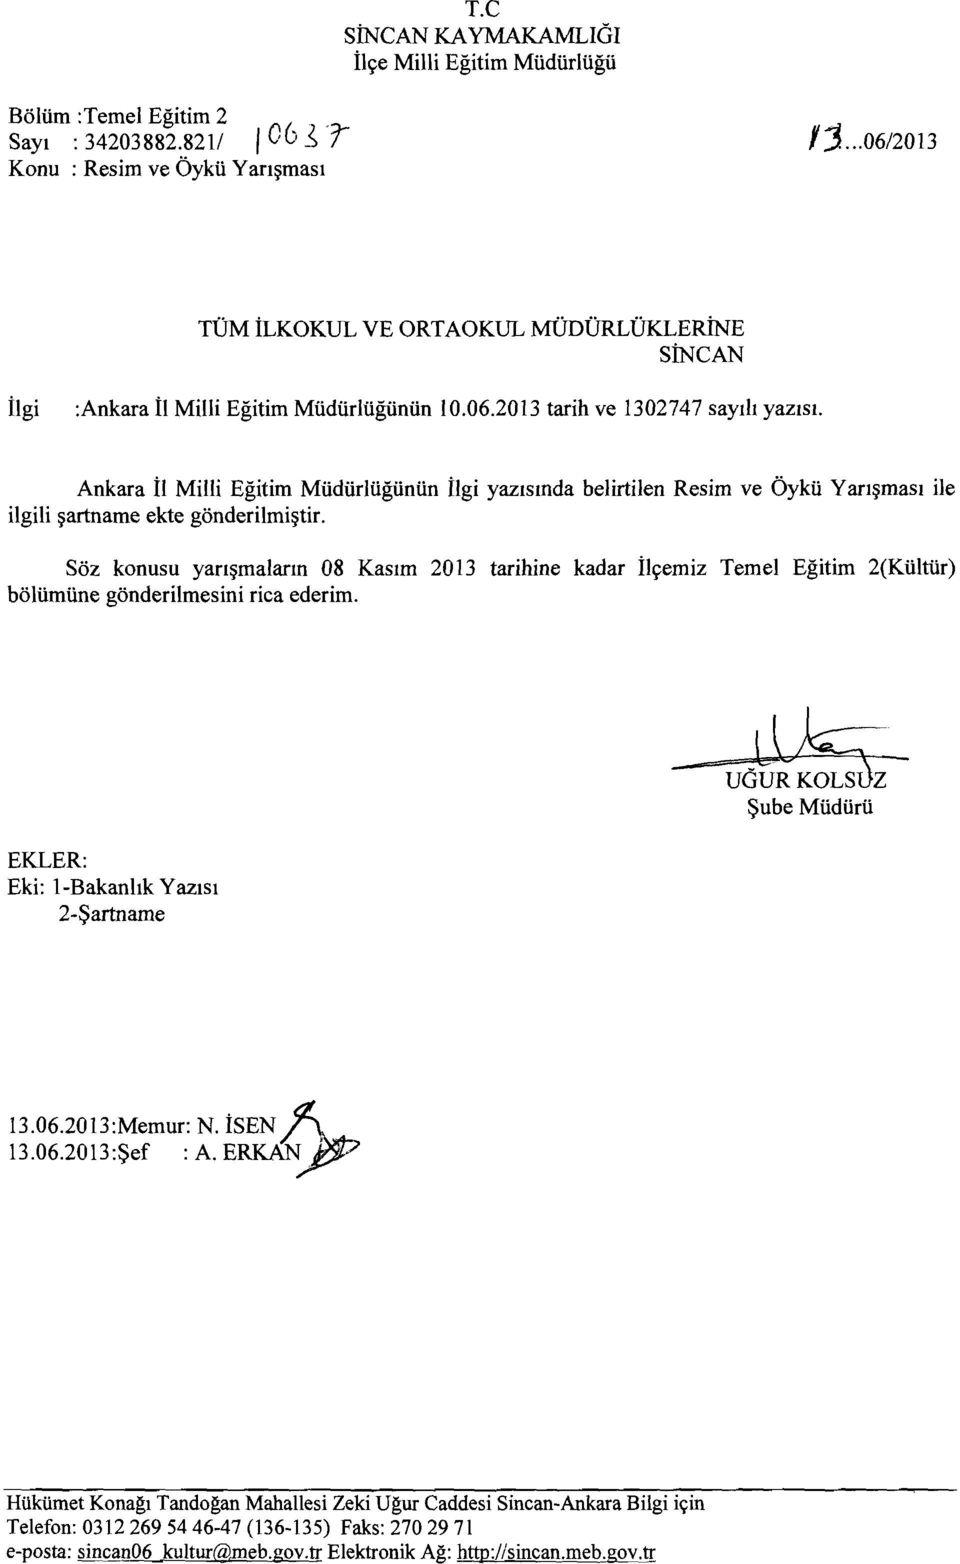 Ankara İl Milli Eğitim Müdürlüğünün ilgi yazısında belirtilen Resim ve Öykü Yarışması ile ilgili şartname ekte gönderilmiştir.